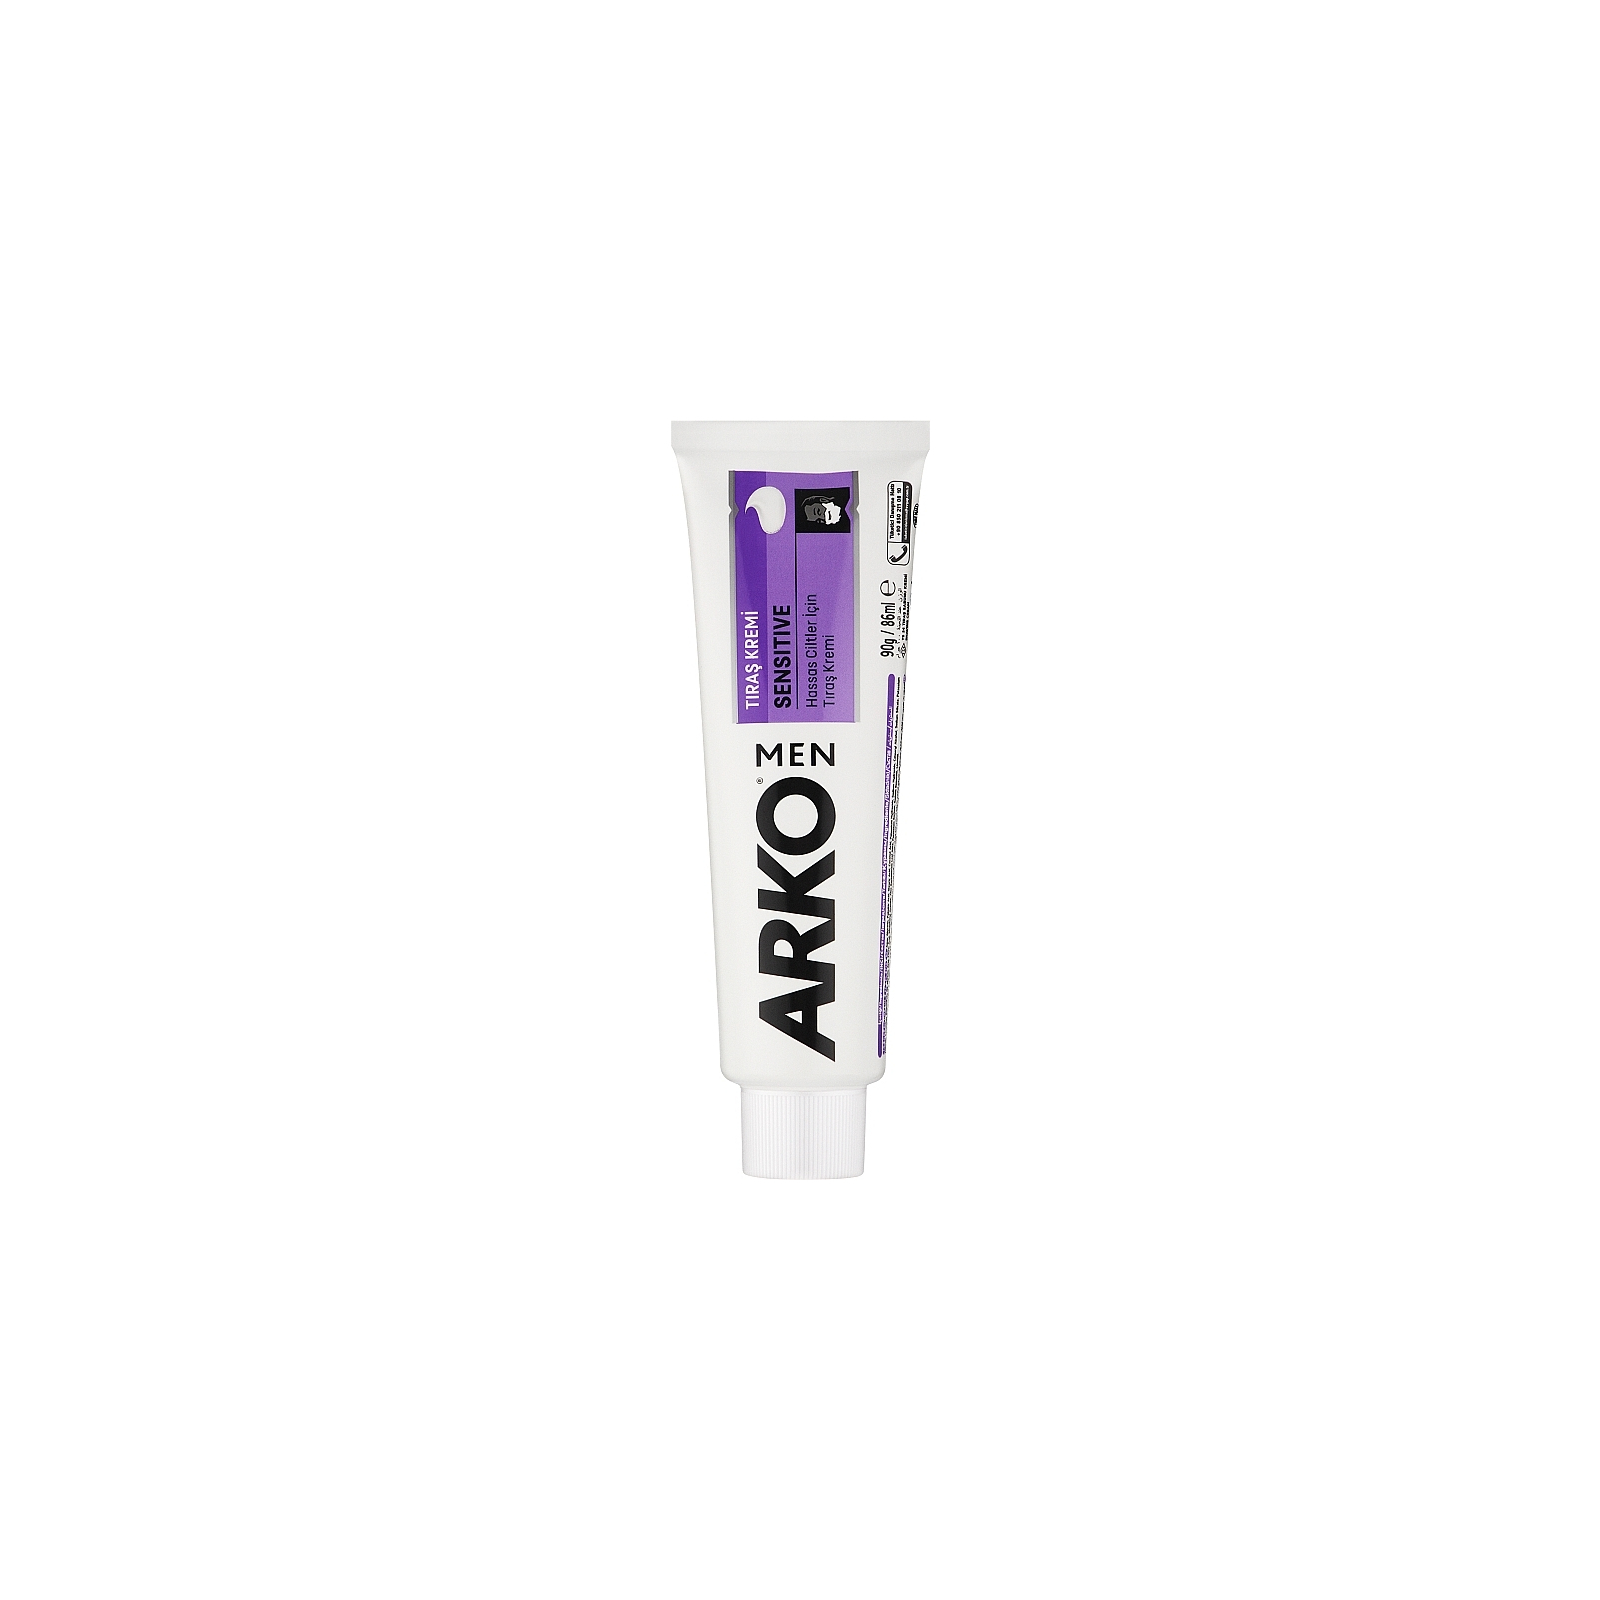 Крем для гоління ARKO Sensitive 65 мл (8690506094515)